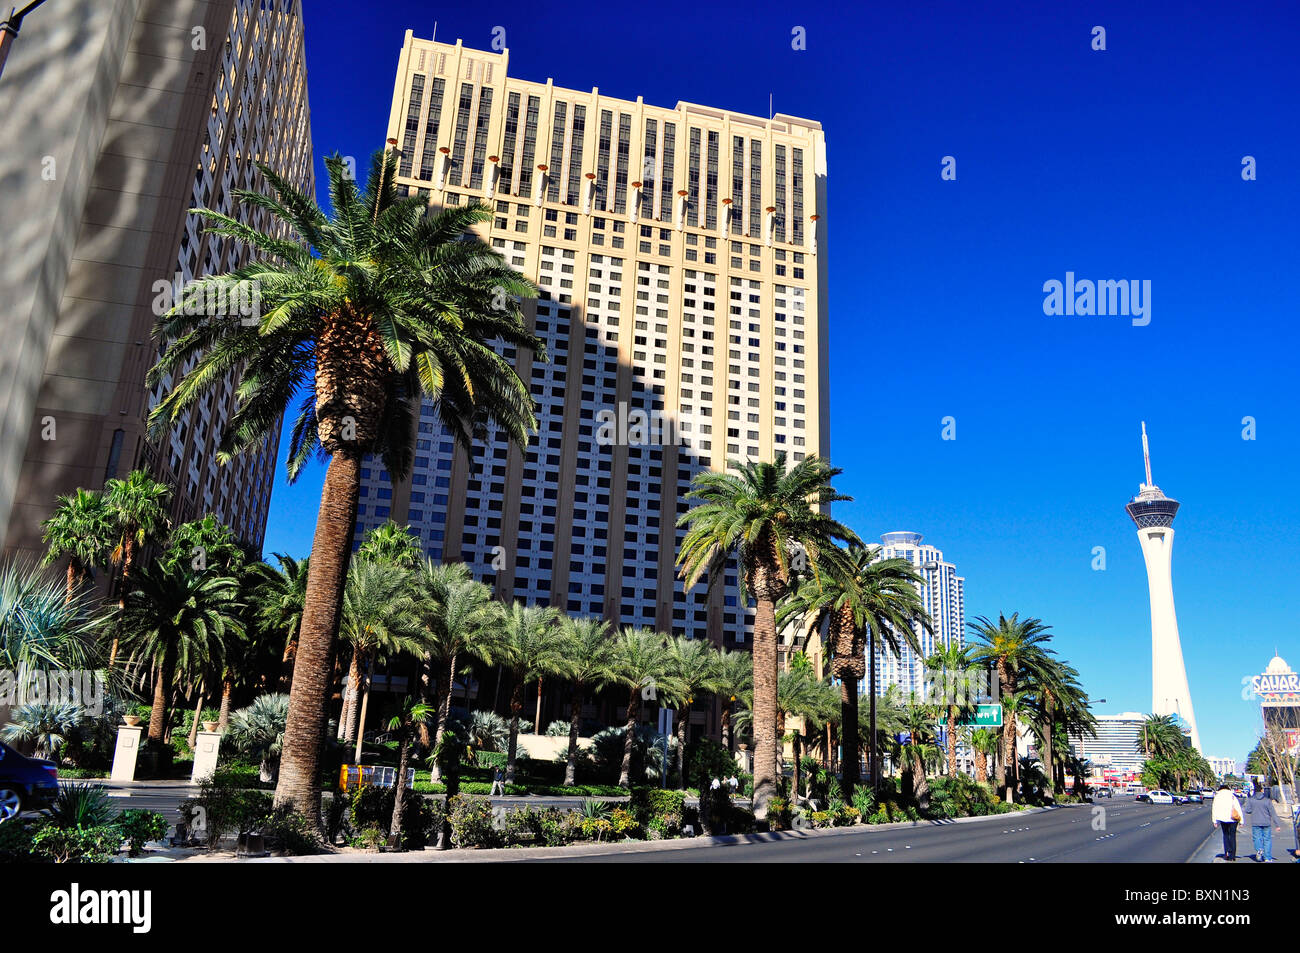 Hilton Grand Vacations Club Hotel on Las Vegas Blvd. Las Vegas, Nevada, USA Stock Photo